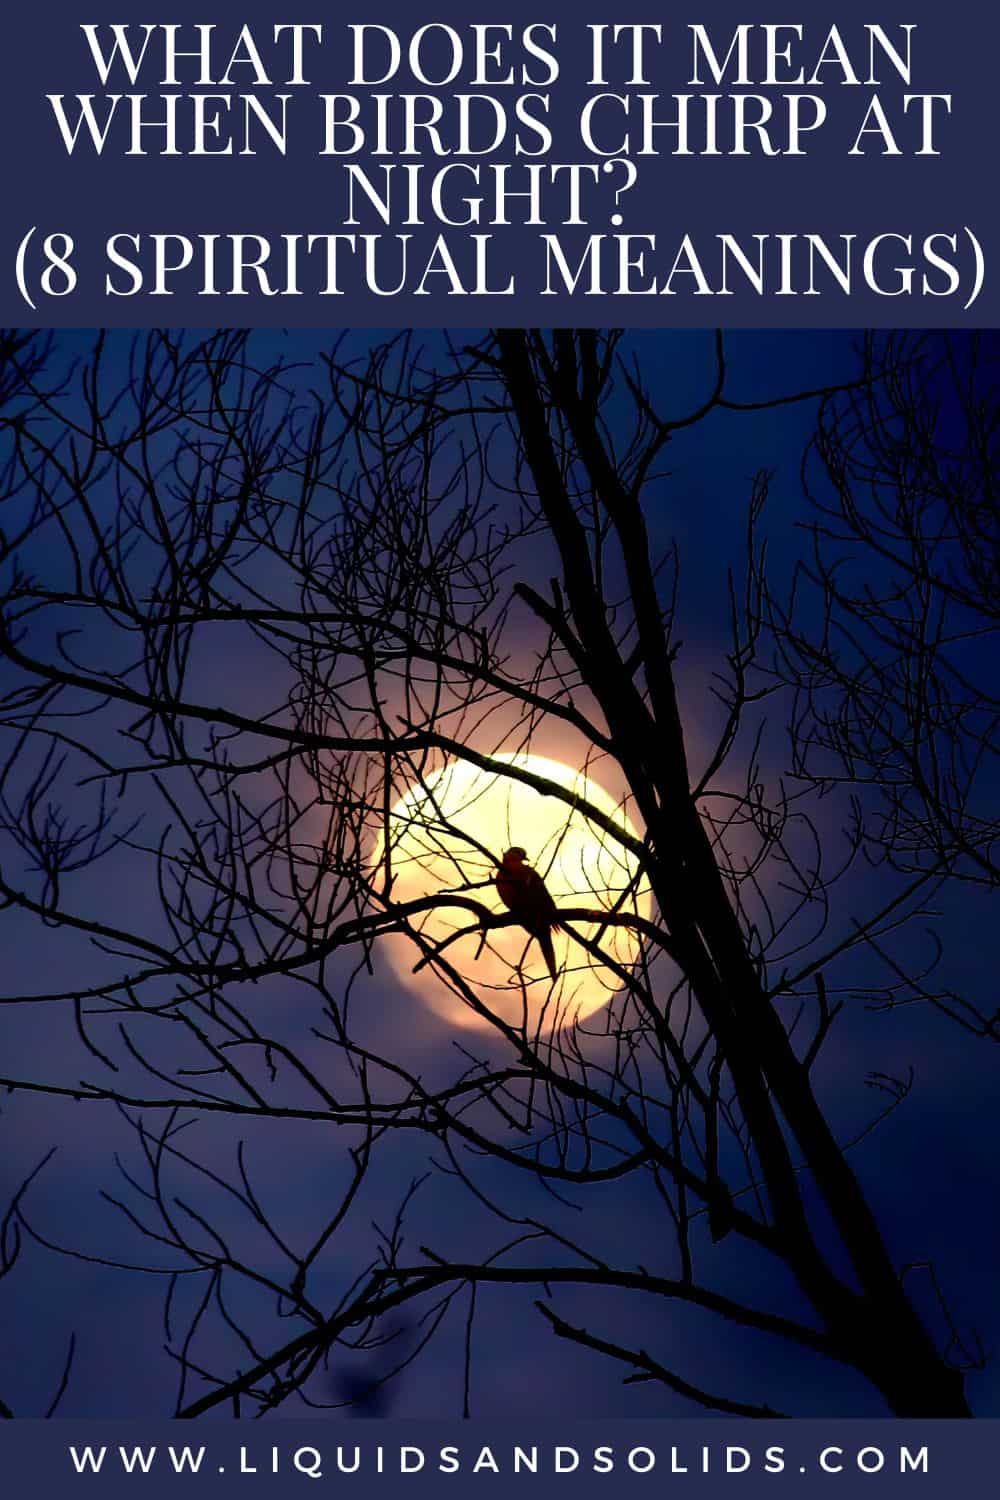  Ce que signifie le chant des oiseaux la nuit (8 significations spirituelles)